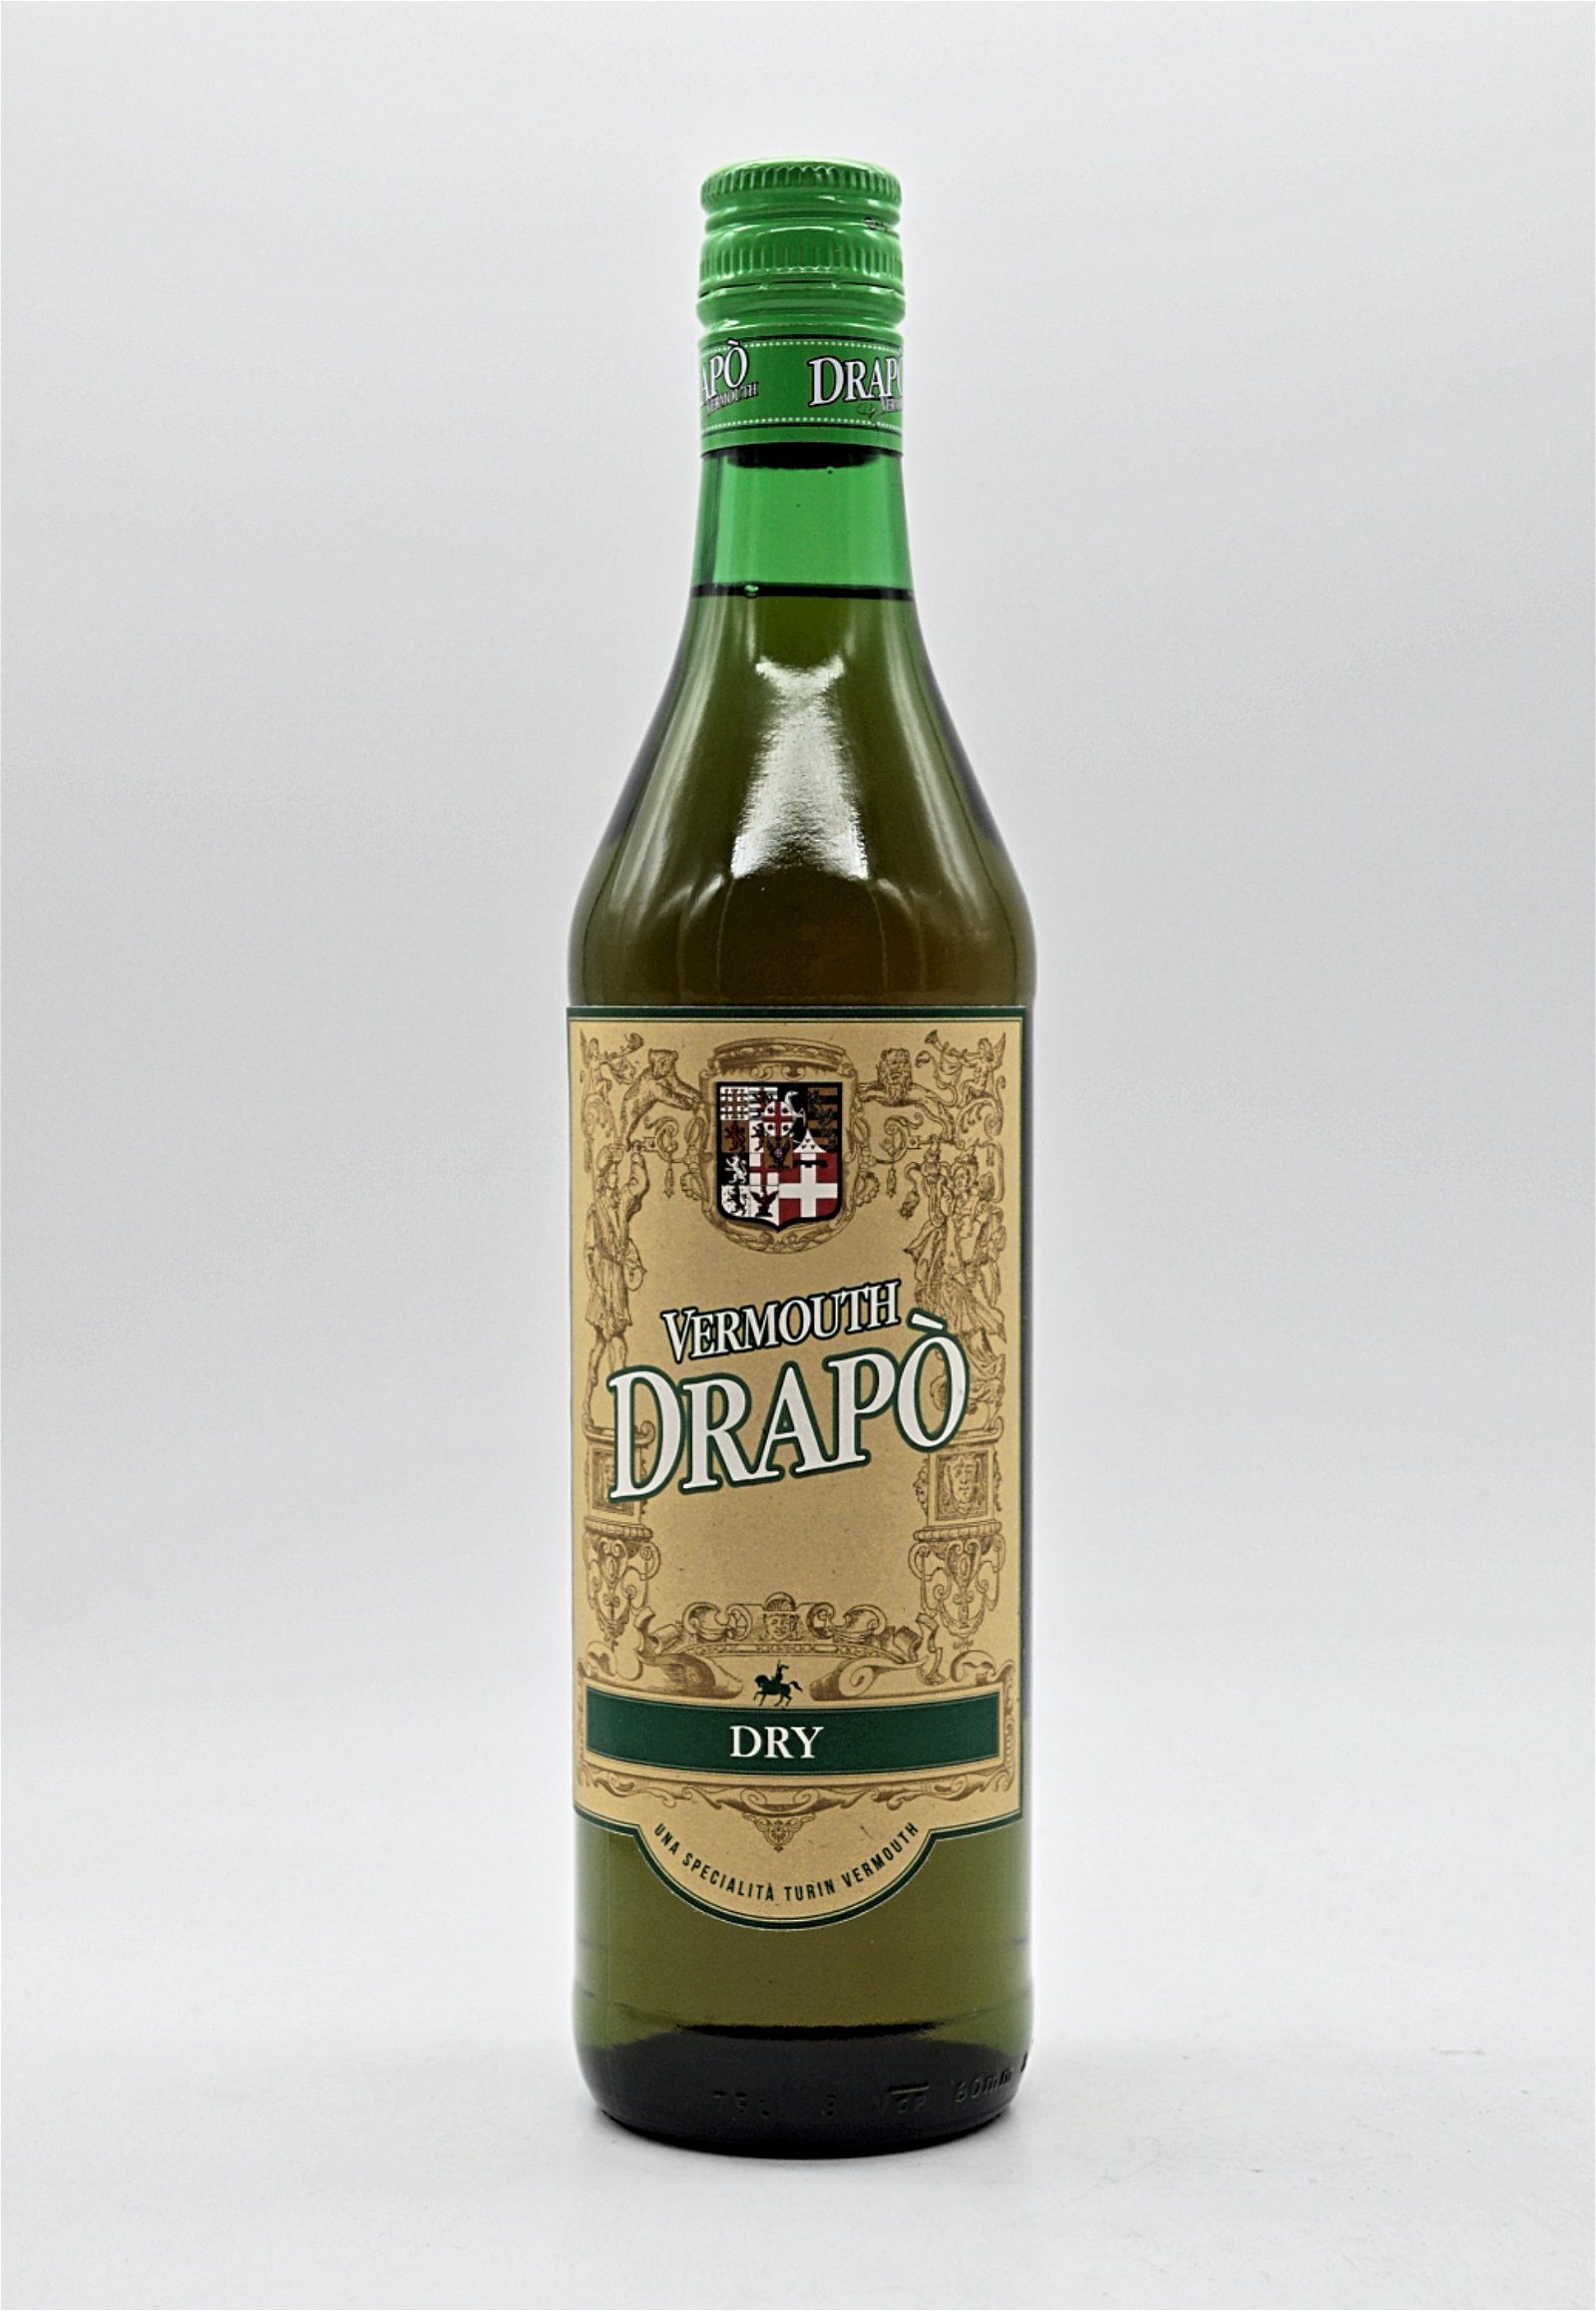 Drapo Vermouth Dry